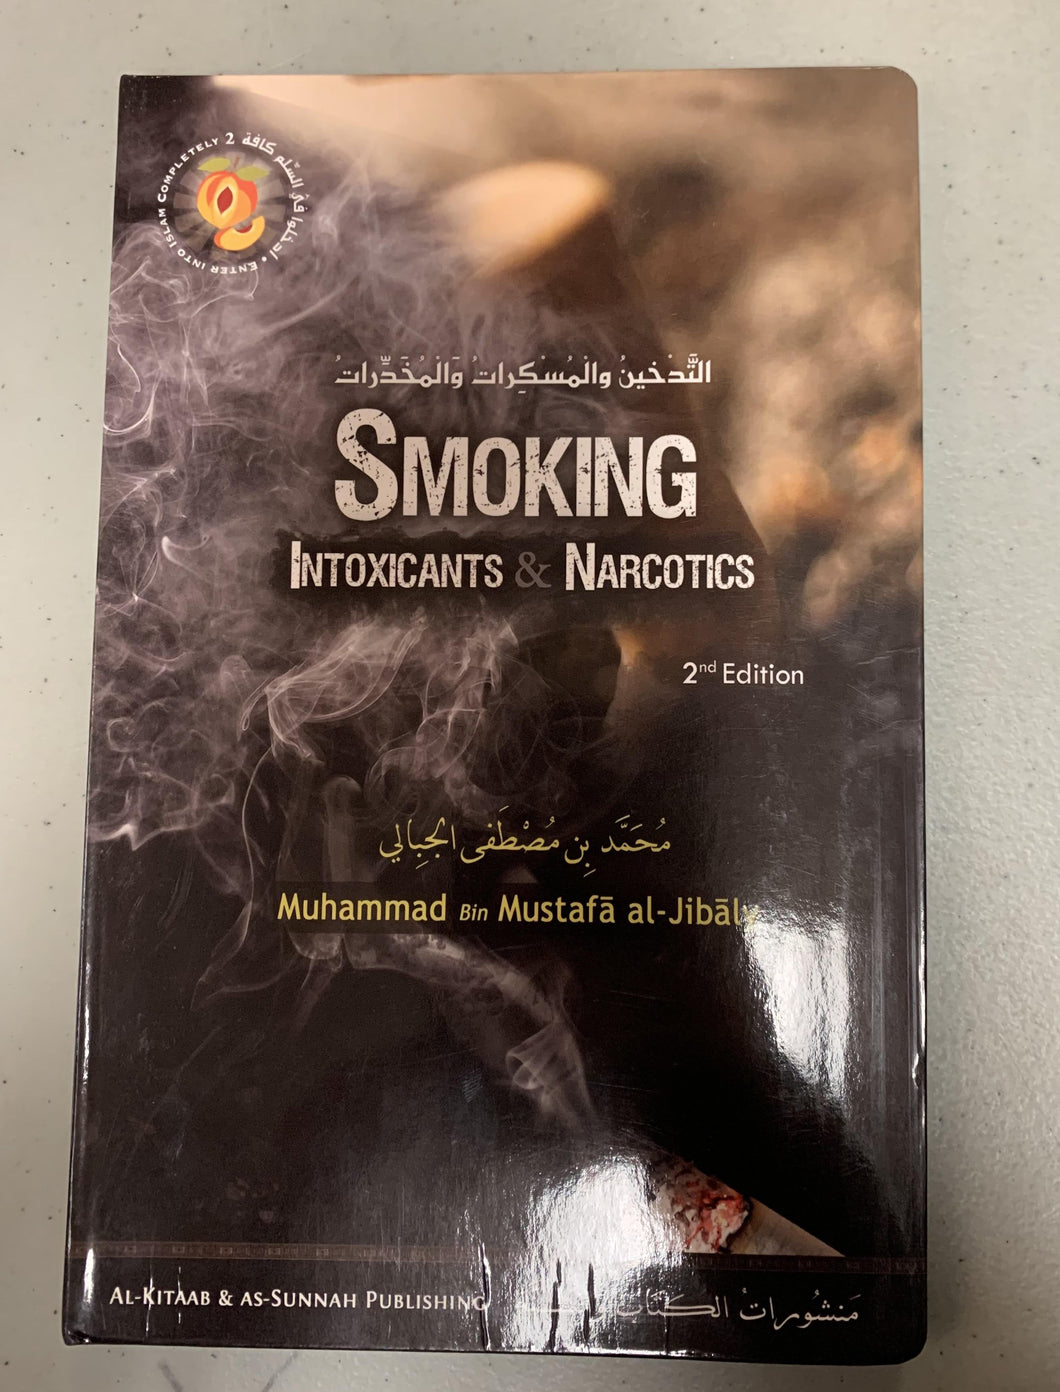 Smoking: Intoxicants & Narcotics